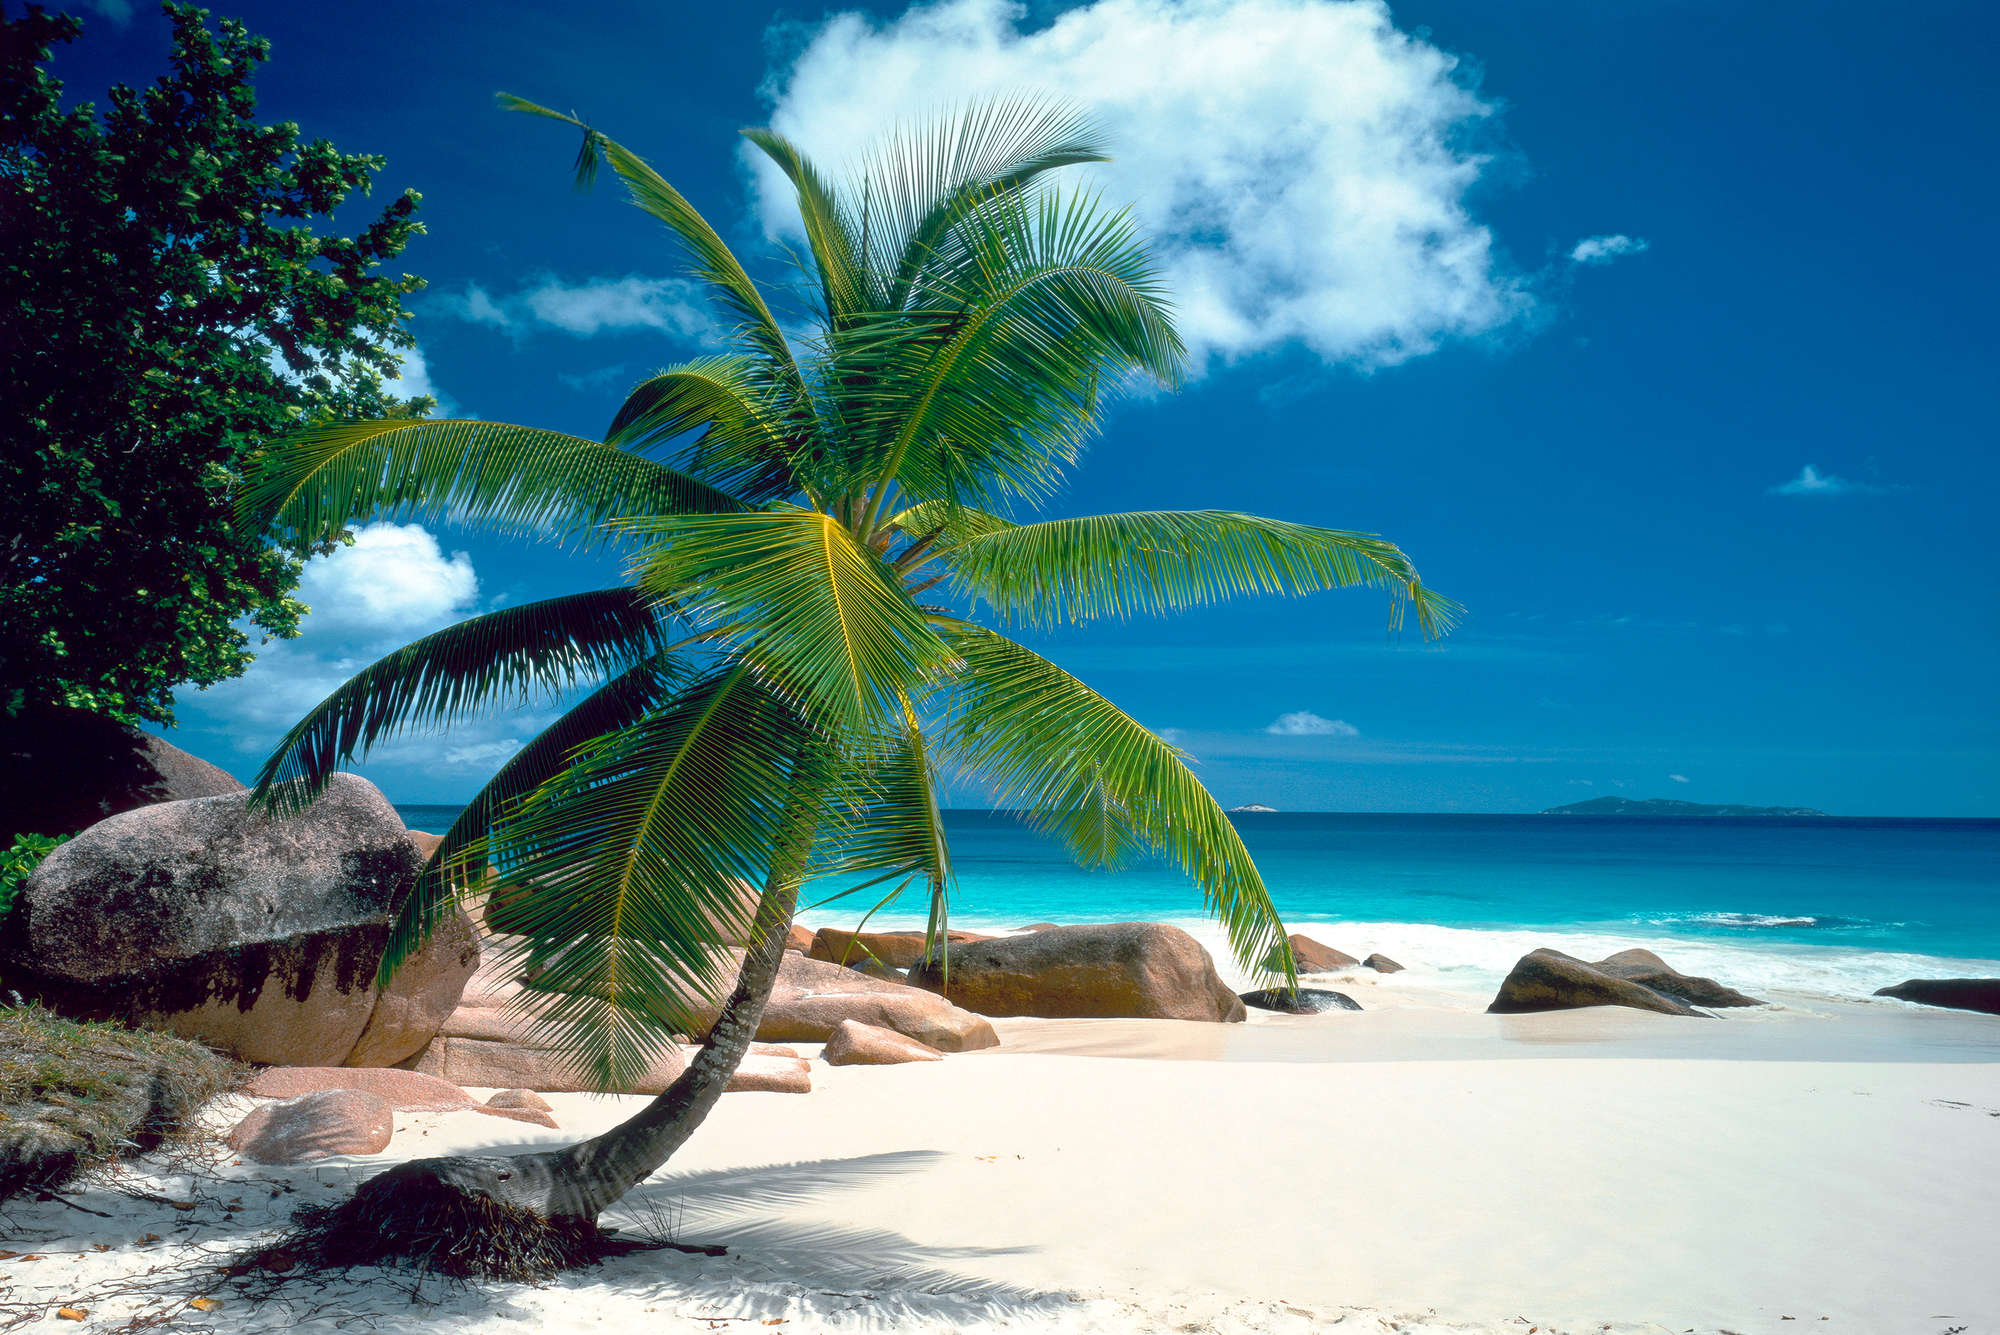             Papel pintado de playa con palmeras y mar azul sobre vellón liso de alta calidad
        